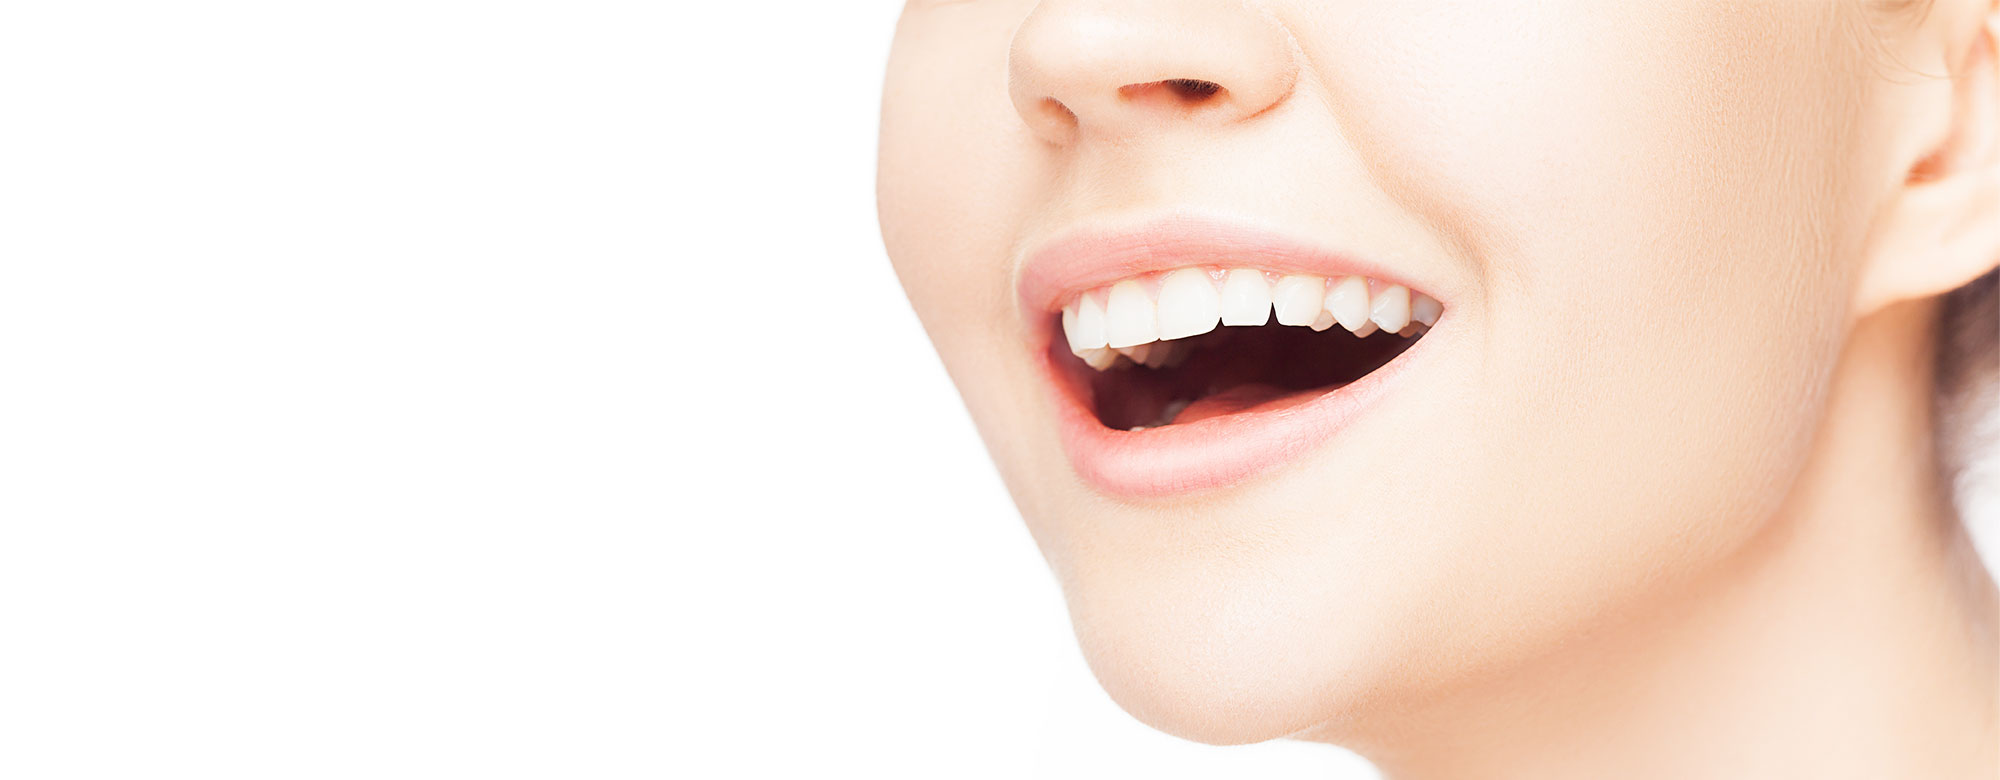 「虫歯治療から矯正、インプラントまで」お口全体のトータル治療